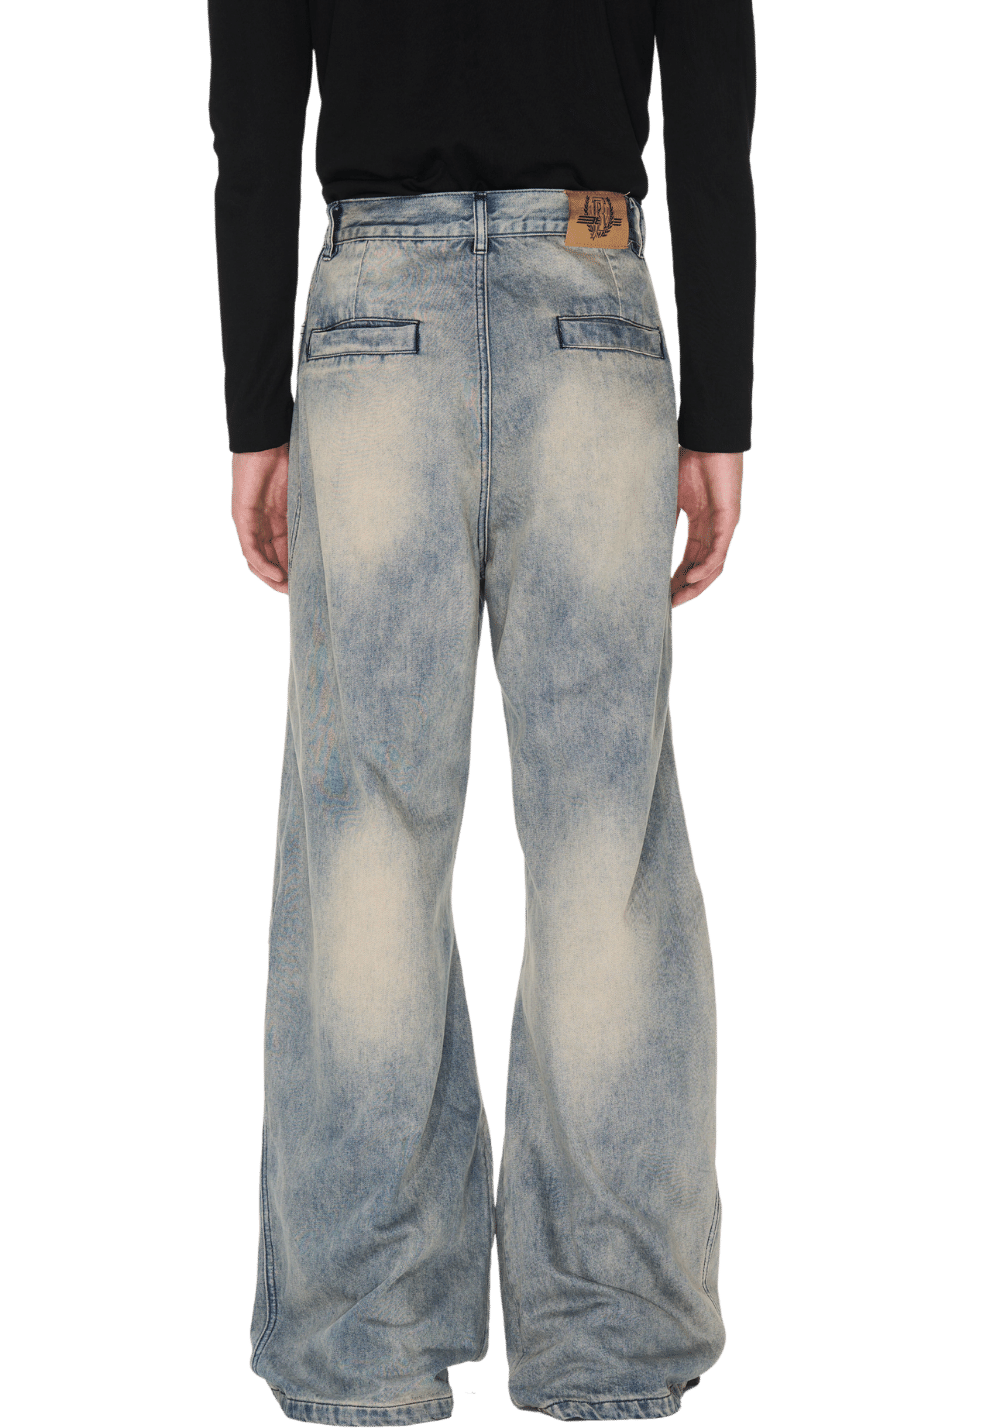 Washed Gradient Denim Jeans - PSYLOS 1, Washed Gradient Denim Jeans, Pants, BLIND NO PLAN, PSYLOS 1